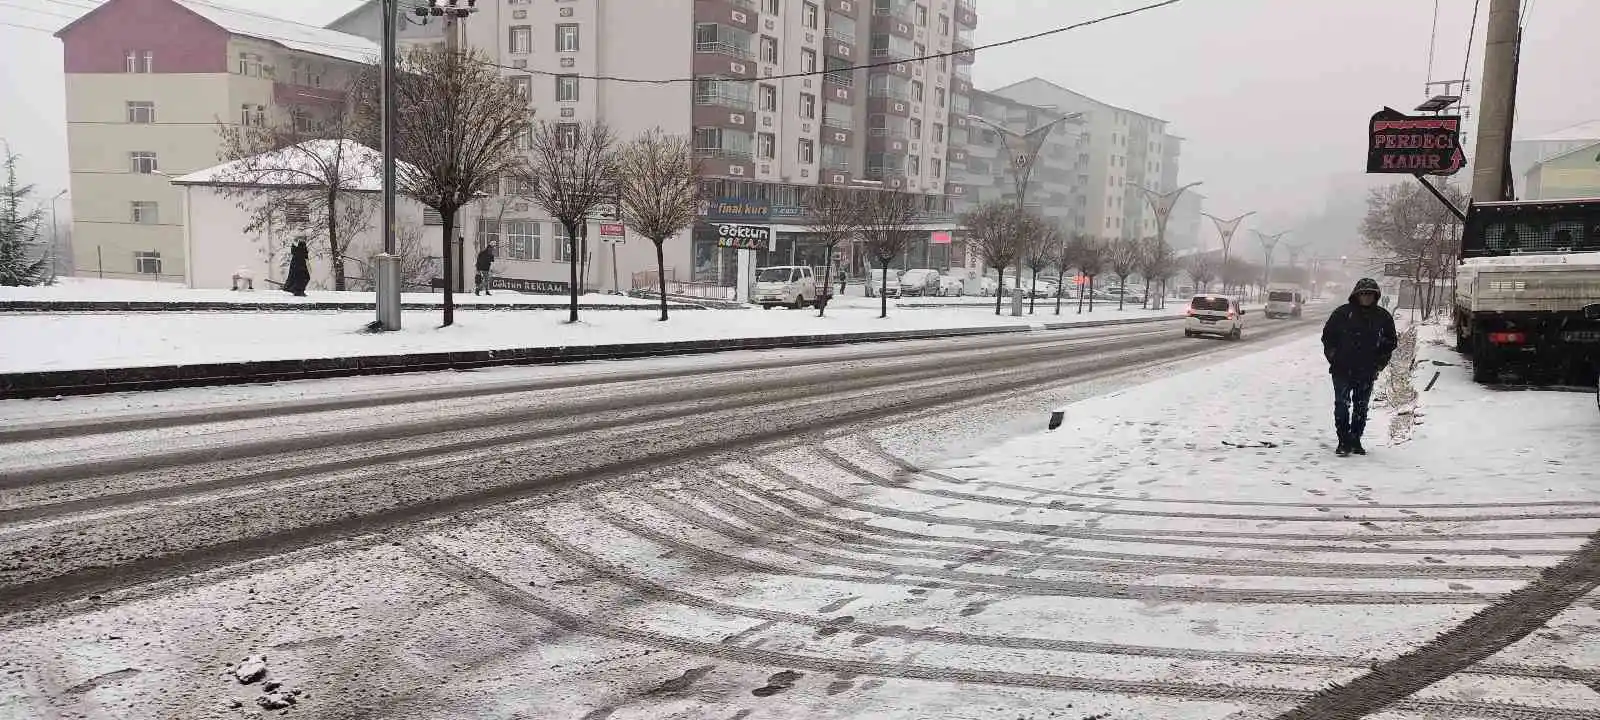 Bitlis’te kar yağışı etkili oldu
